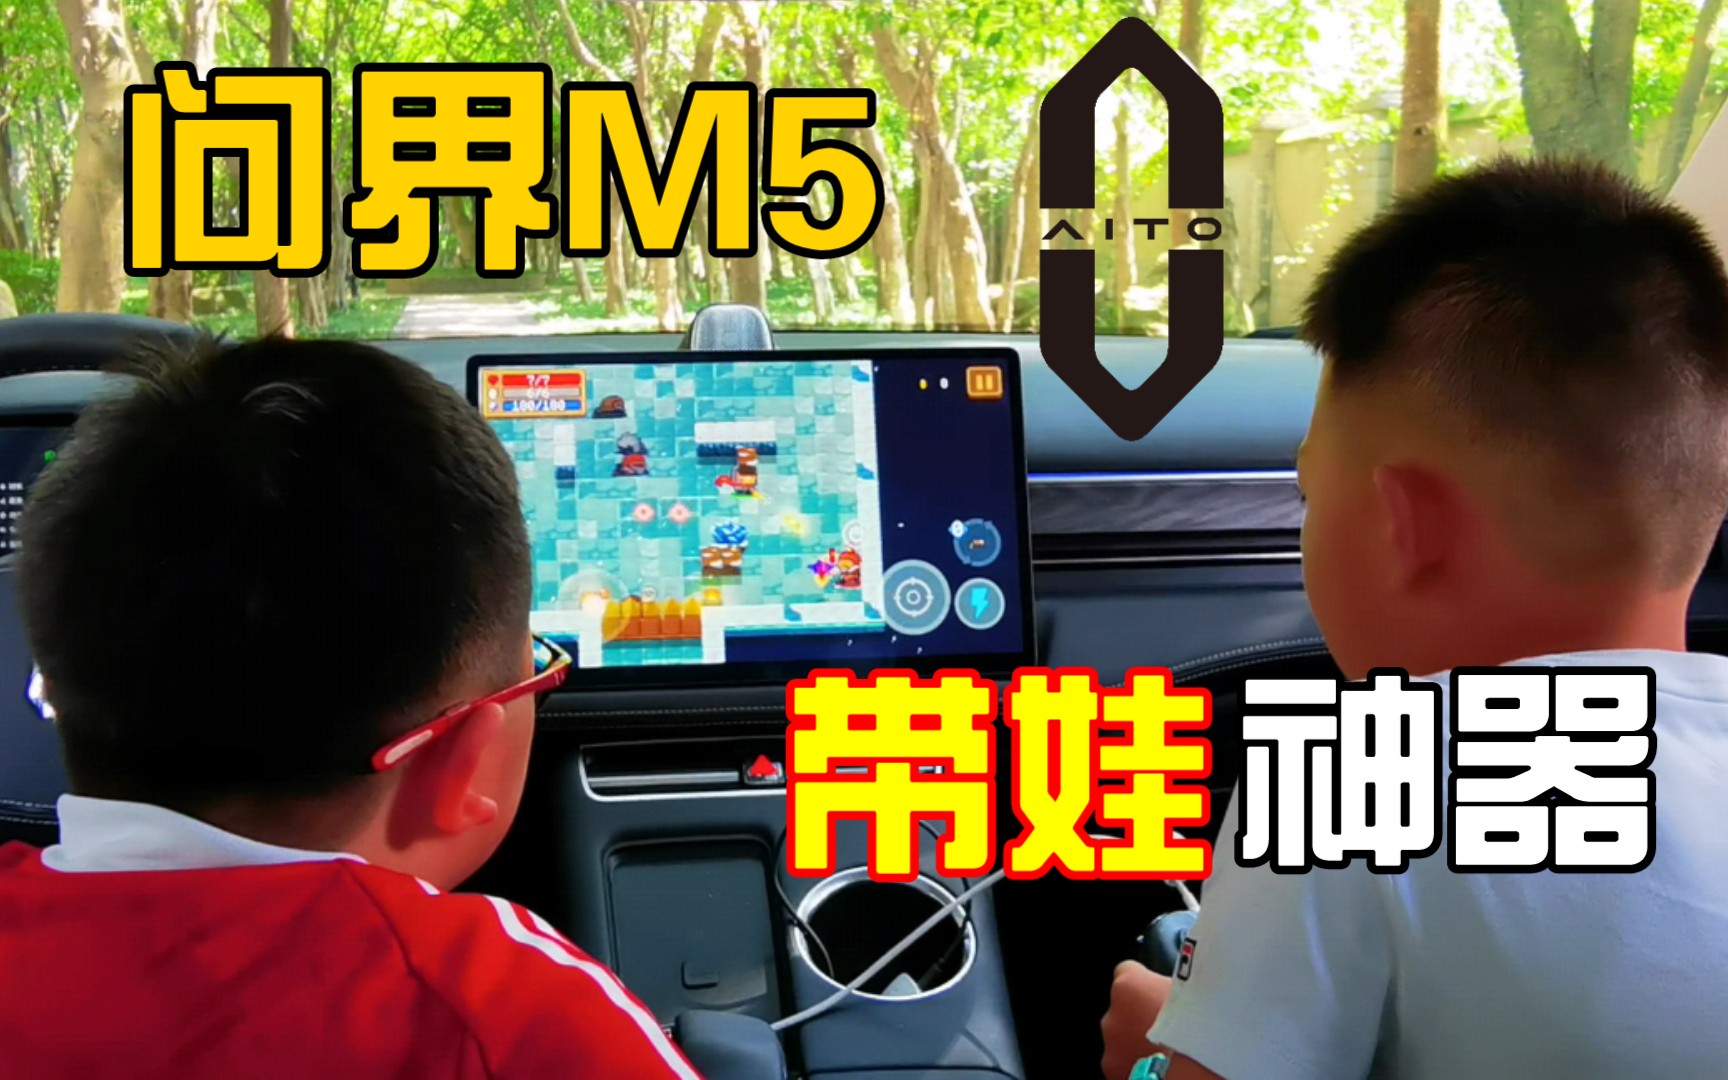 小朋友体验问界M5 K歌 游戏功能 鸿蒙车机真好玩